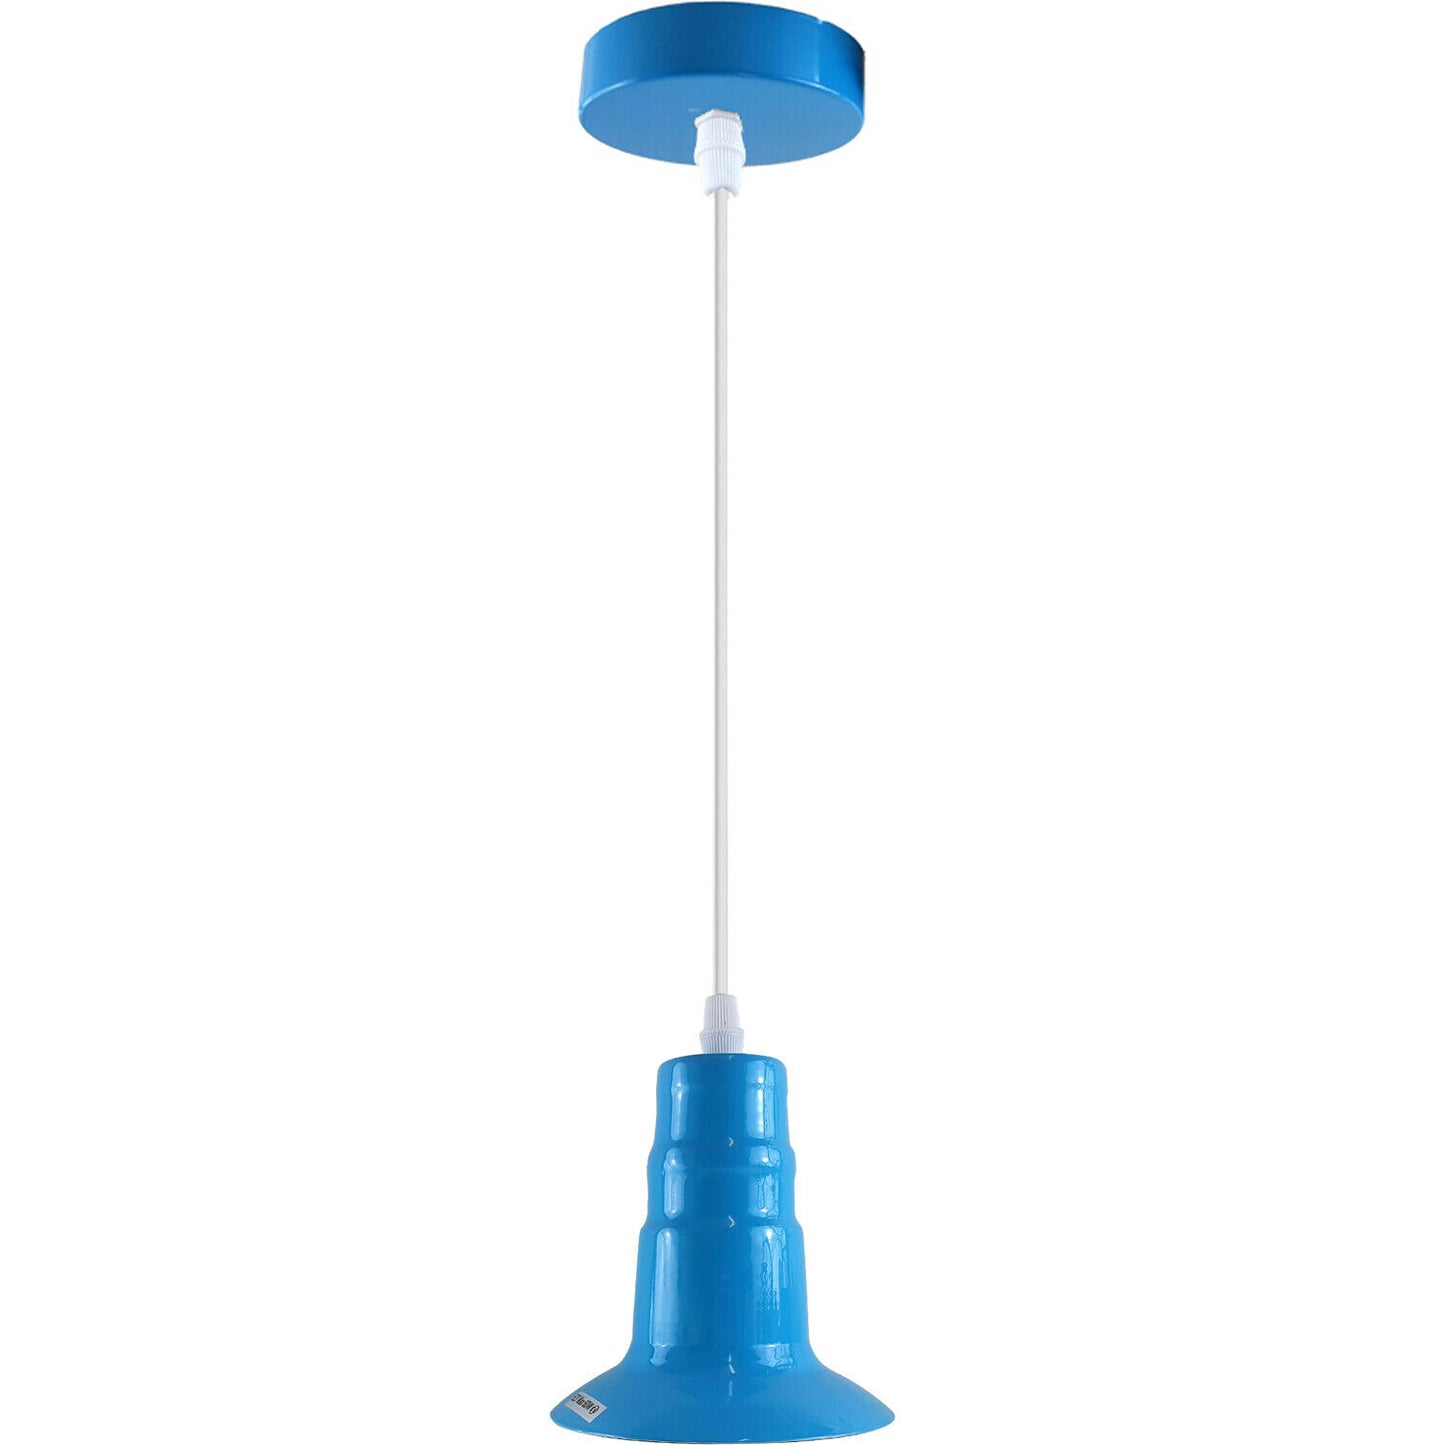 Blue Industrial Ceiling E27 Base Fitting Lamp Holder Pendant